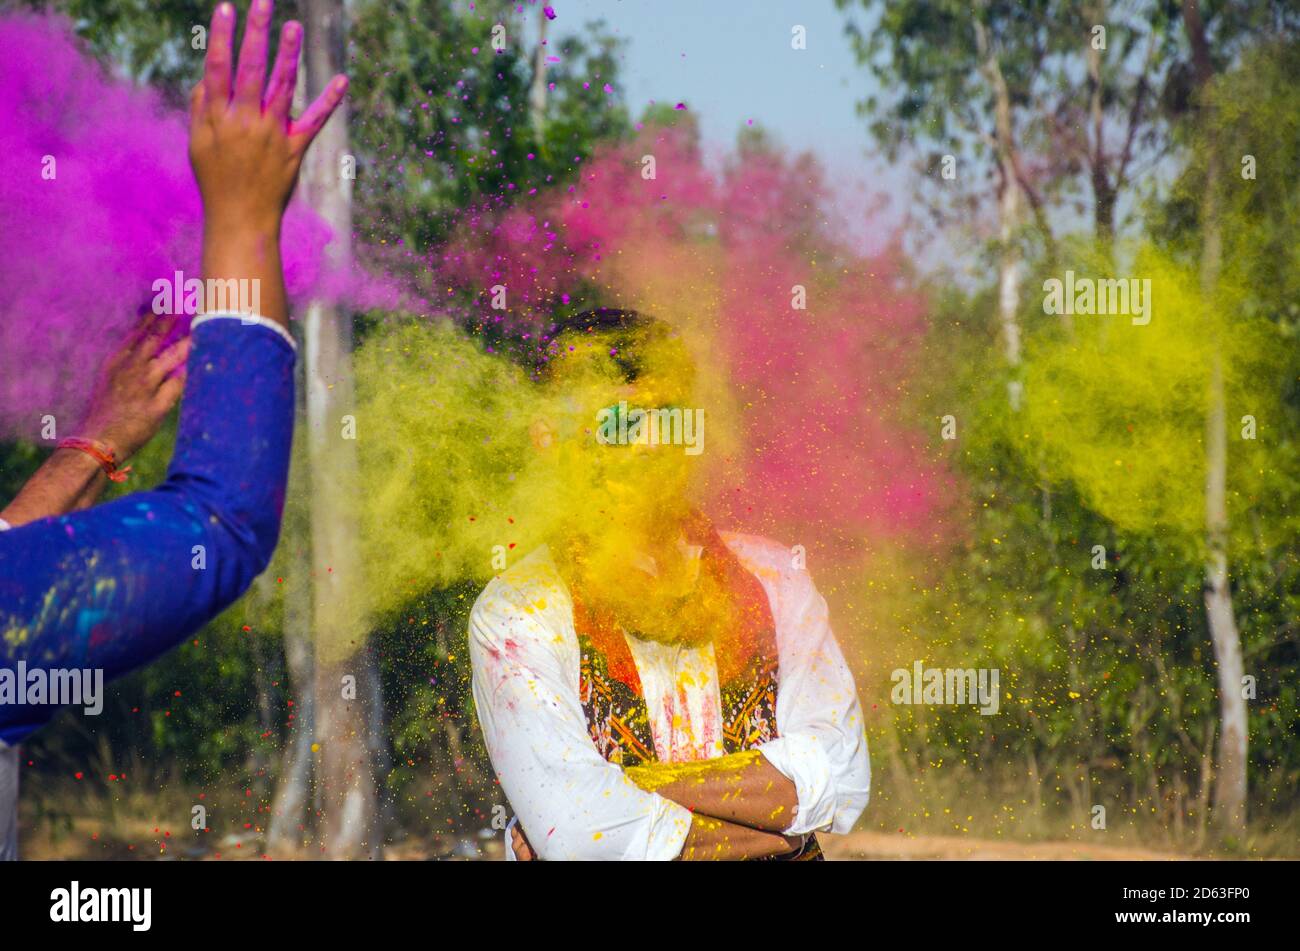 birbhum west bengal india on 9th march 2020: celebrating holi festival at biswa bharati shantiniketan campus at birbhum west bengal india. Stock Photo